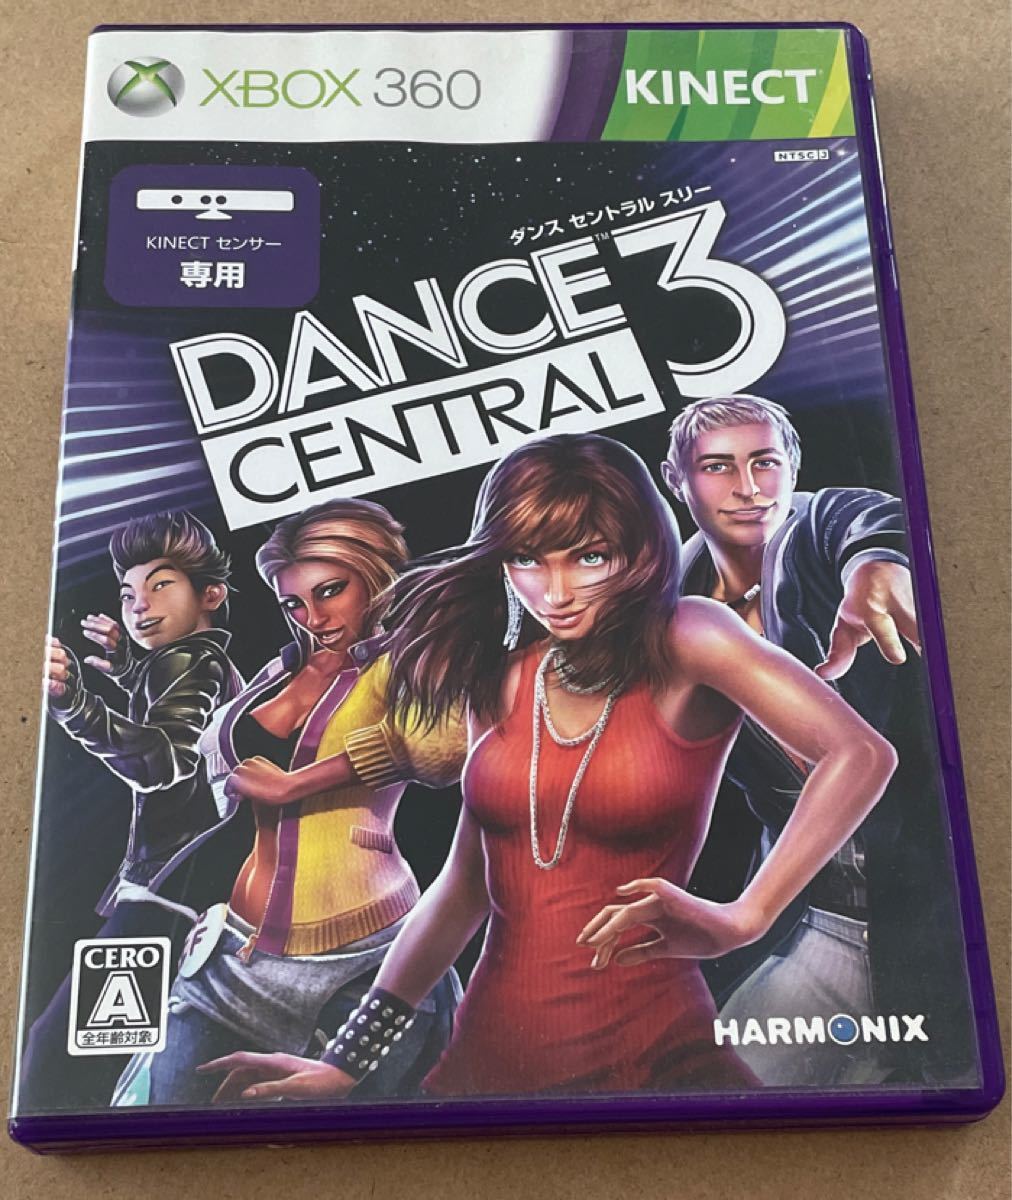 Xbox360 ダンスセントラル3